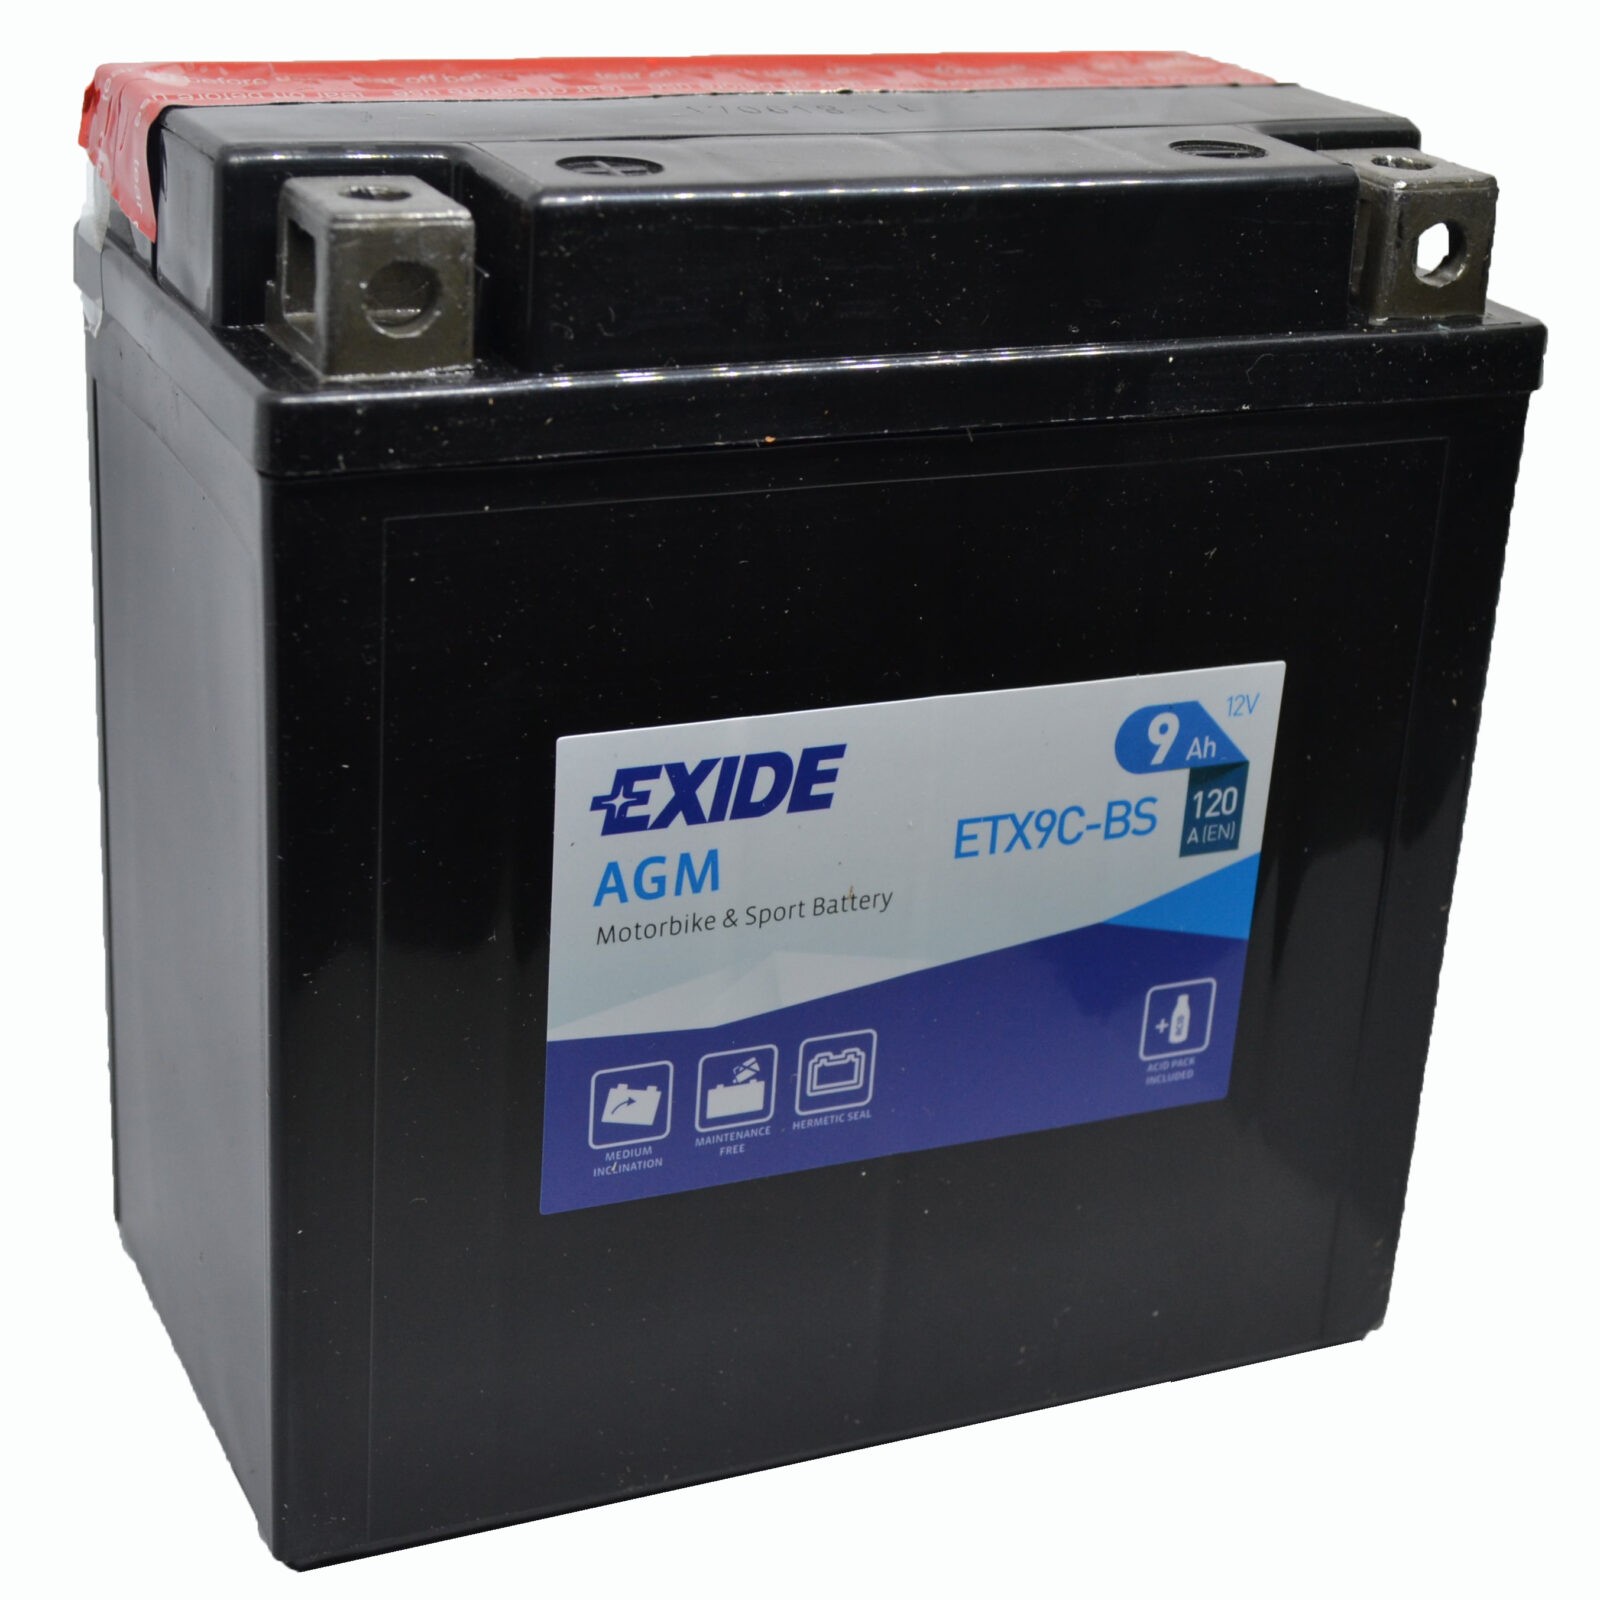 Аккумулятор Exide ETX9C-BS AGM 12 V 9 AH 120 A ETN 1 B0, Exide